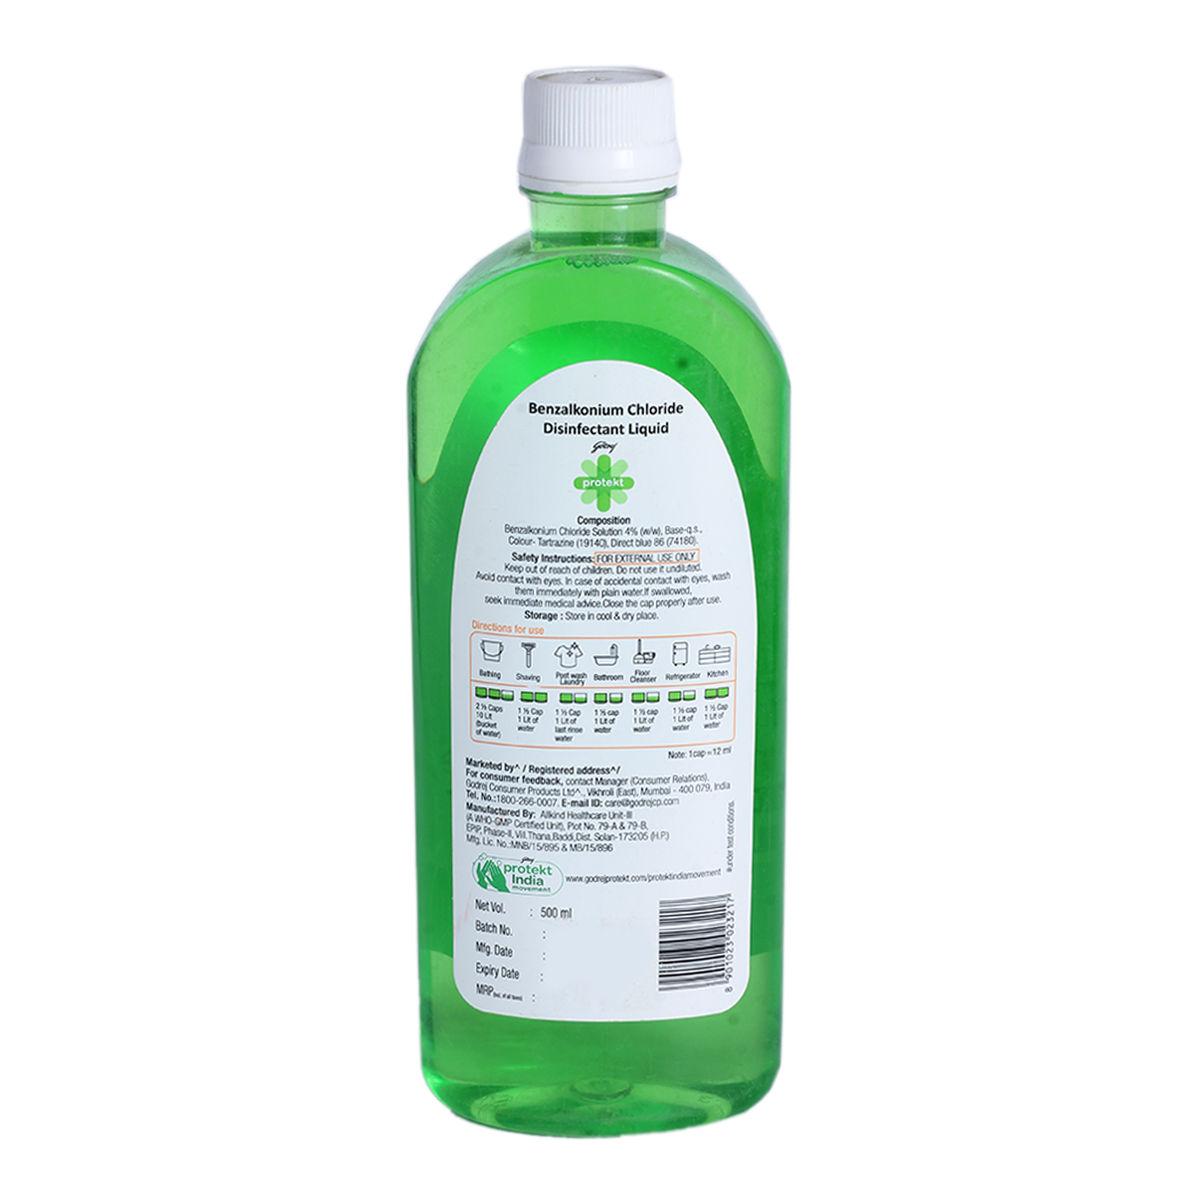 Godrej Protekt Multi Purpose Disinfectant Citrus Liquid, 500 ml, Pack of 1 